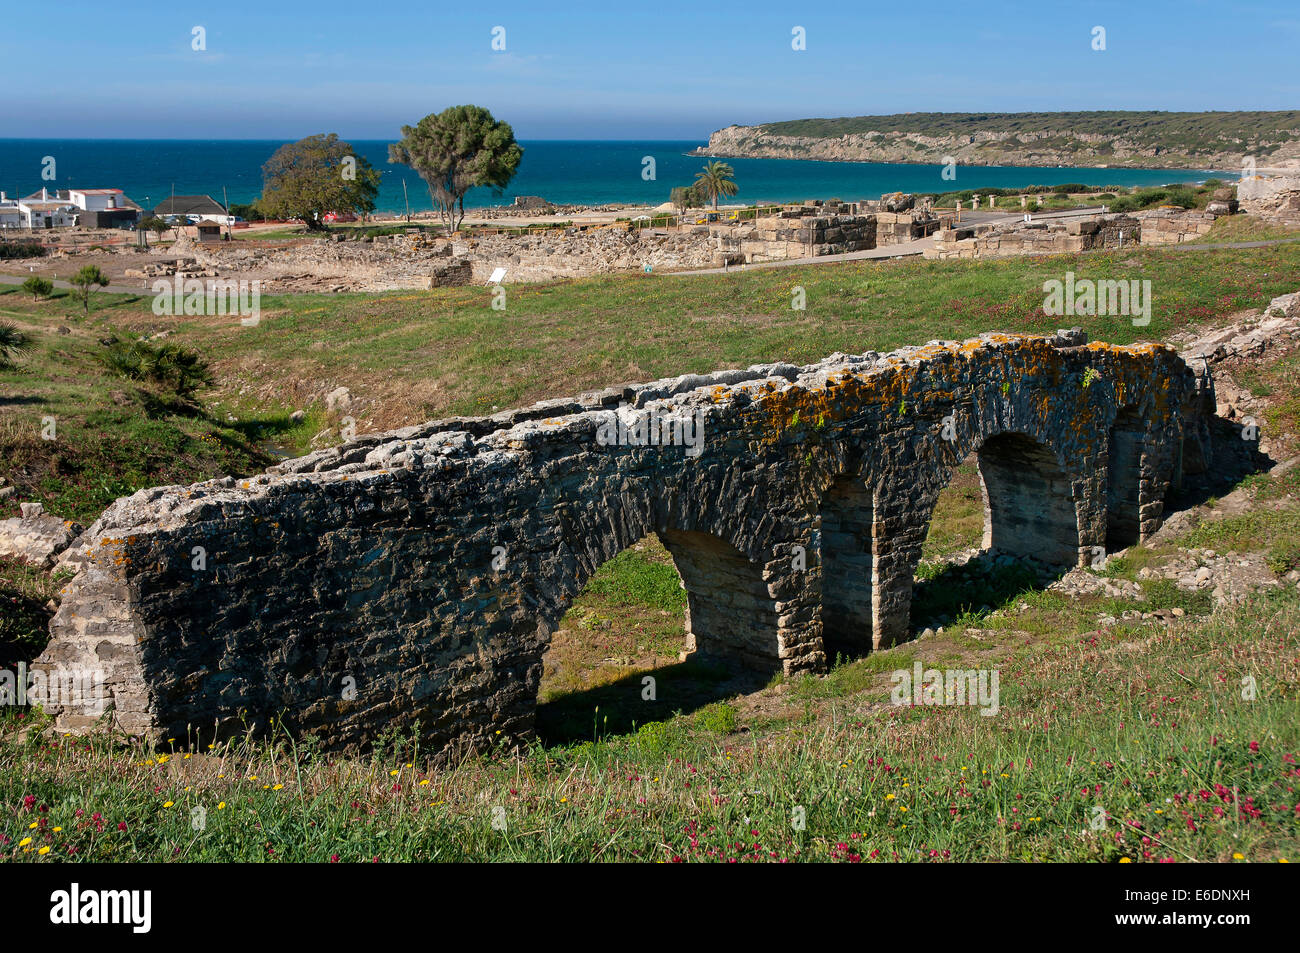 Roman ruins of Baelo Claudia-aqueduct of Punta Paloma, Tarifa, Cadiz province, Region of Andalusia, Spain, Europe Stock Photo